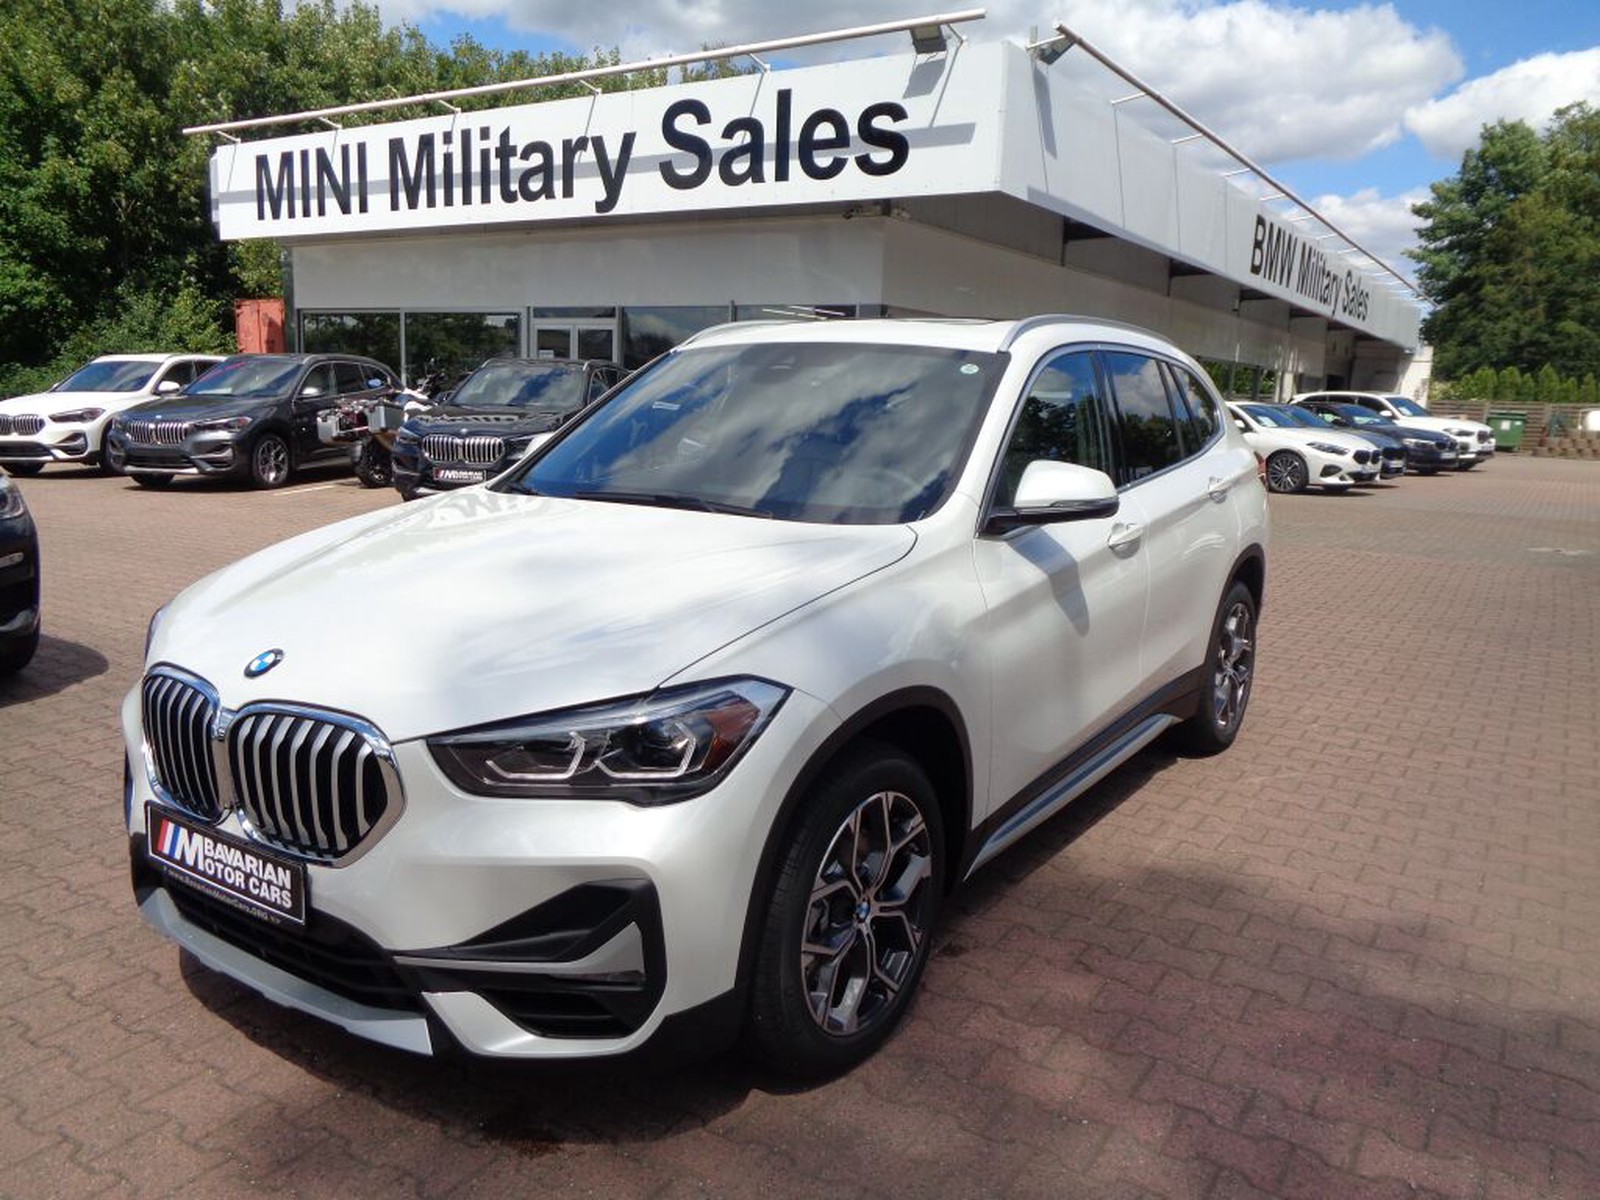 BMW X1 xDrive28i - Tax Free Military Sales in Würzburg Price 33995 usd